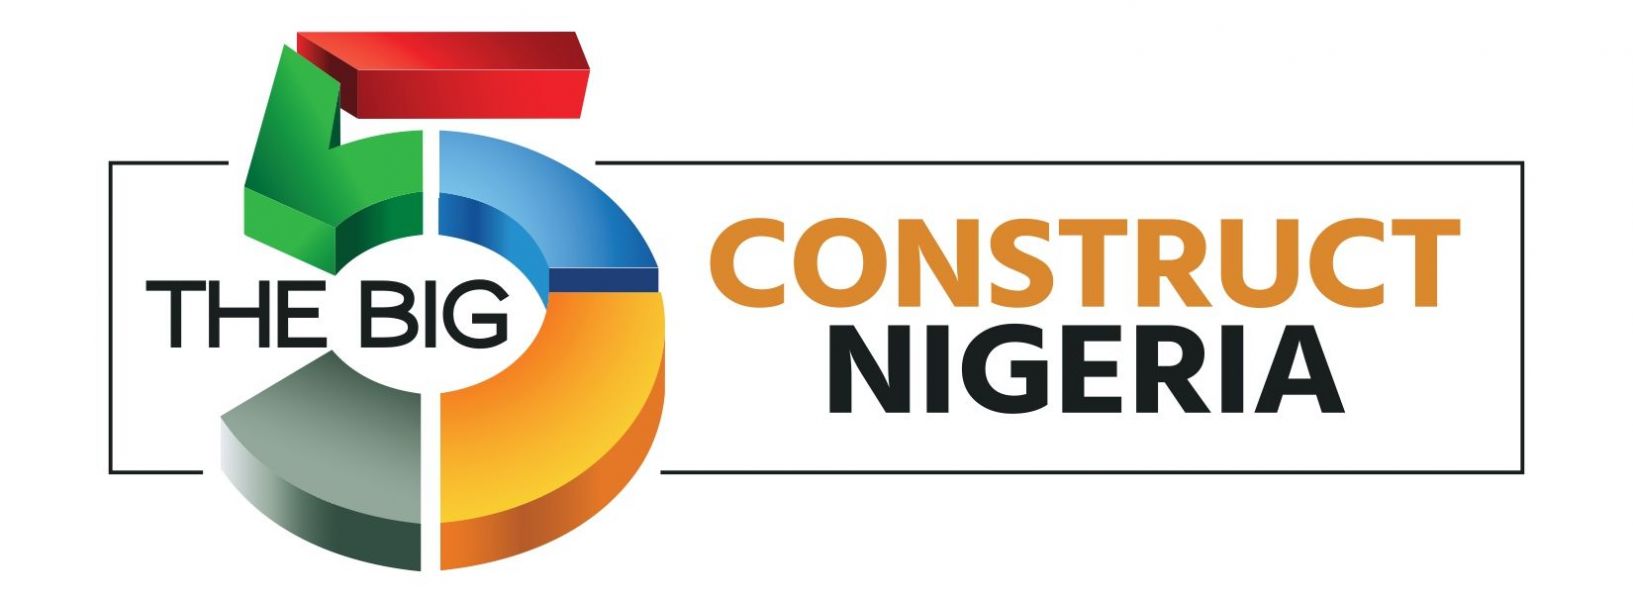 Logotipo de The Big 5 Nigeria